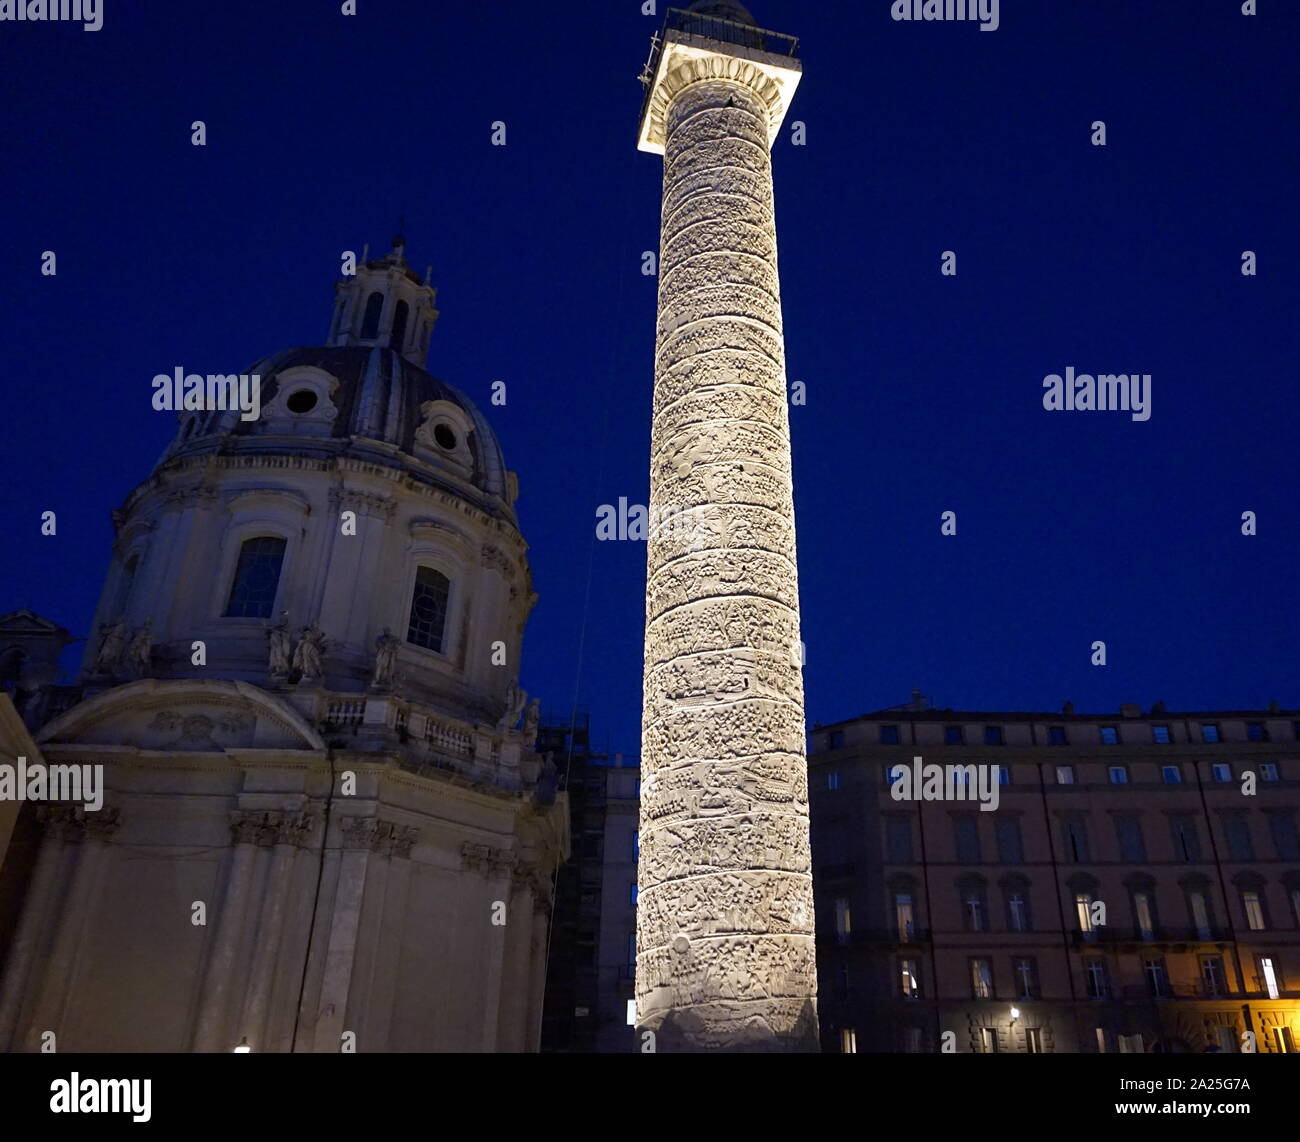 Blick auf die Trajan Spalte in der Nacht. Trajan's Column ist eine Römische Siegessäule in Rom, Italien, zum Gedenken an den römischen Kaiser Trajan's Sieg in der Dakischen Kriege. Stockfoto